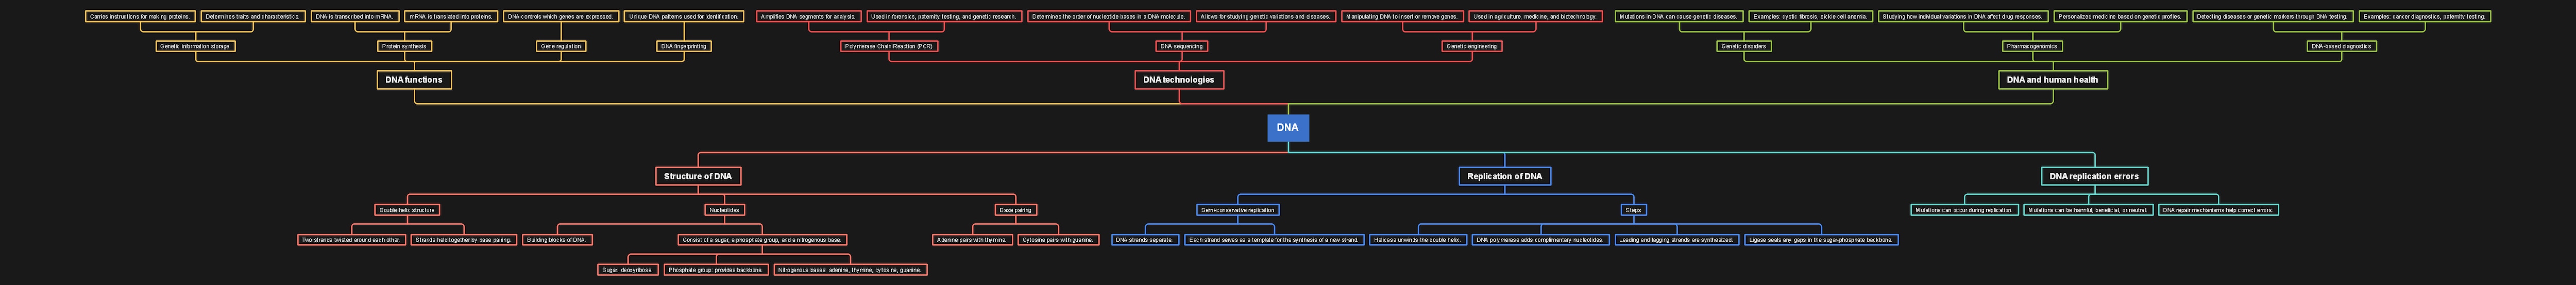 Plantilla del Mapa Conceptual del ADN, línea de tiempo de arriba abajo